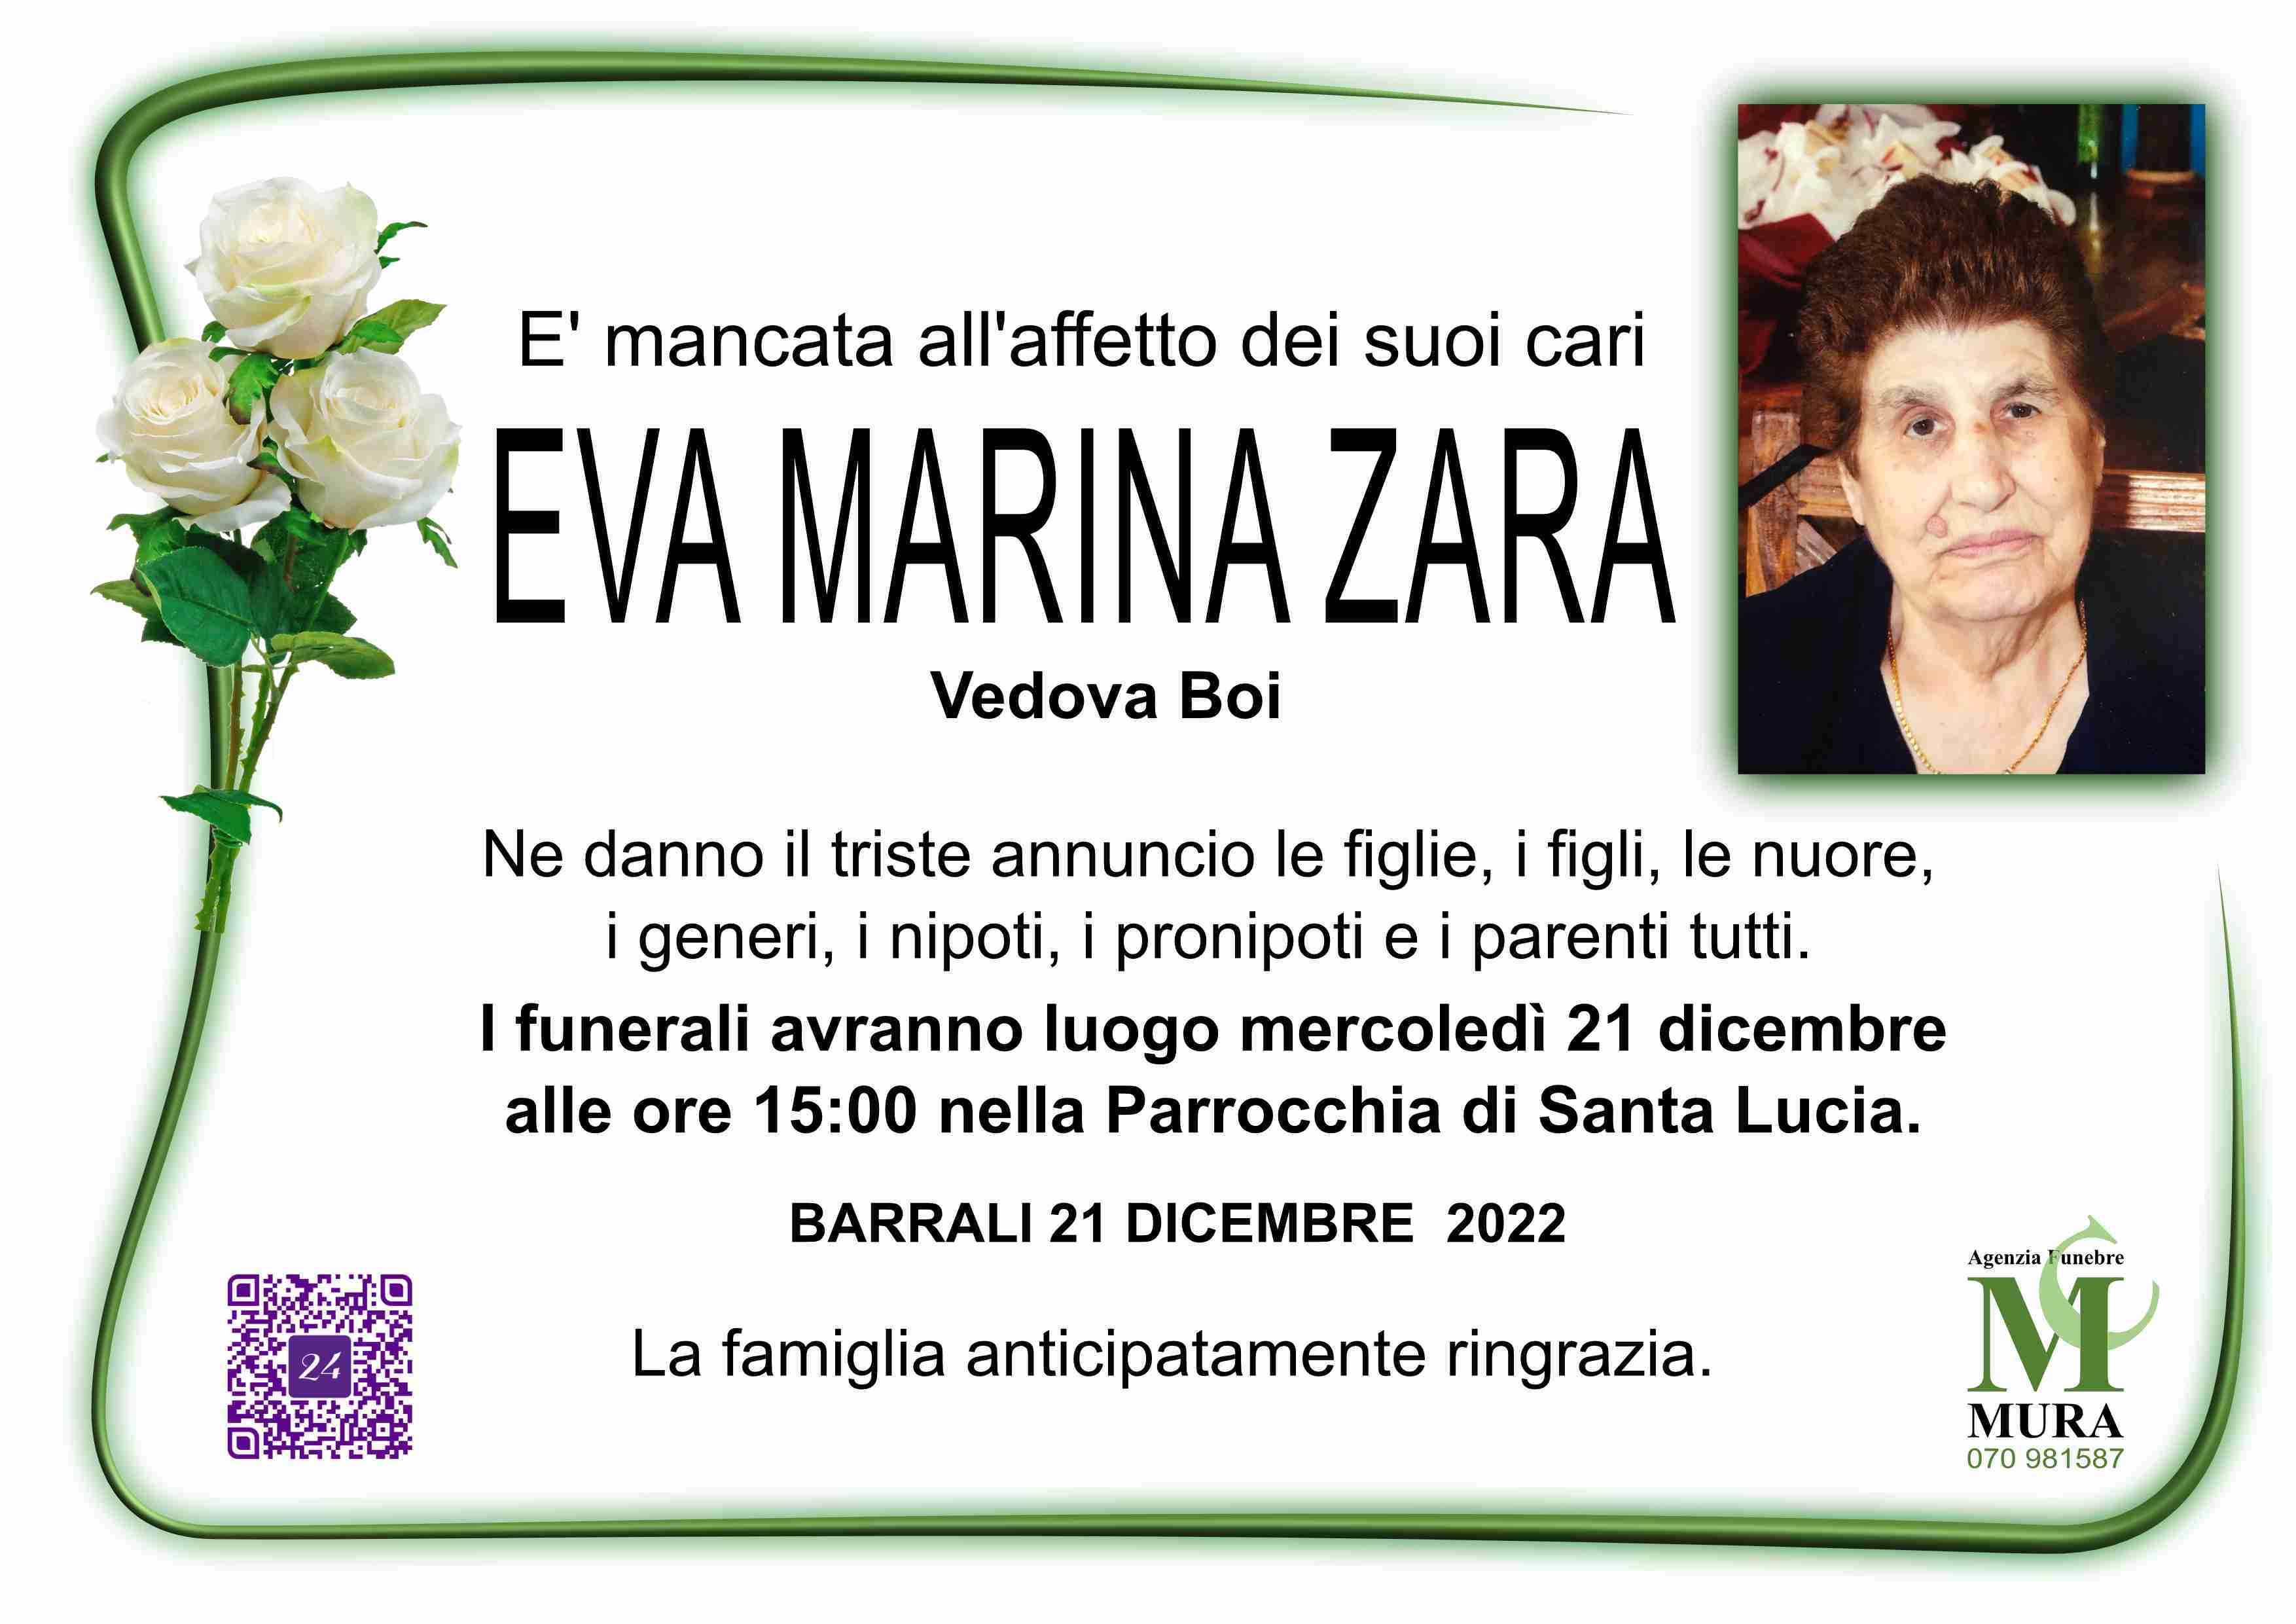 Eva Marina Zara